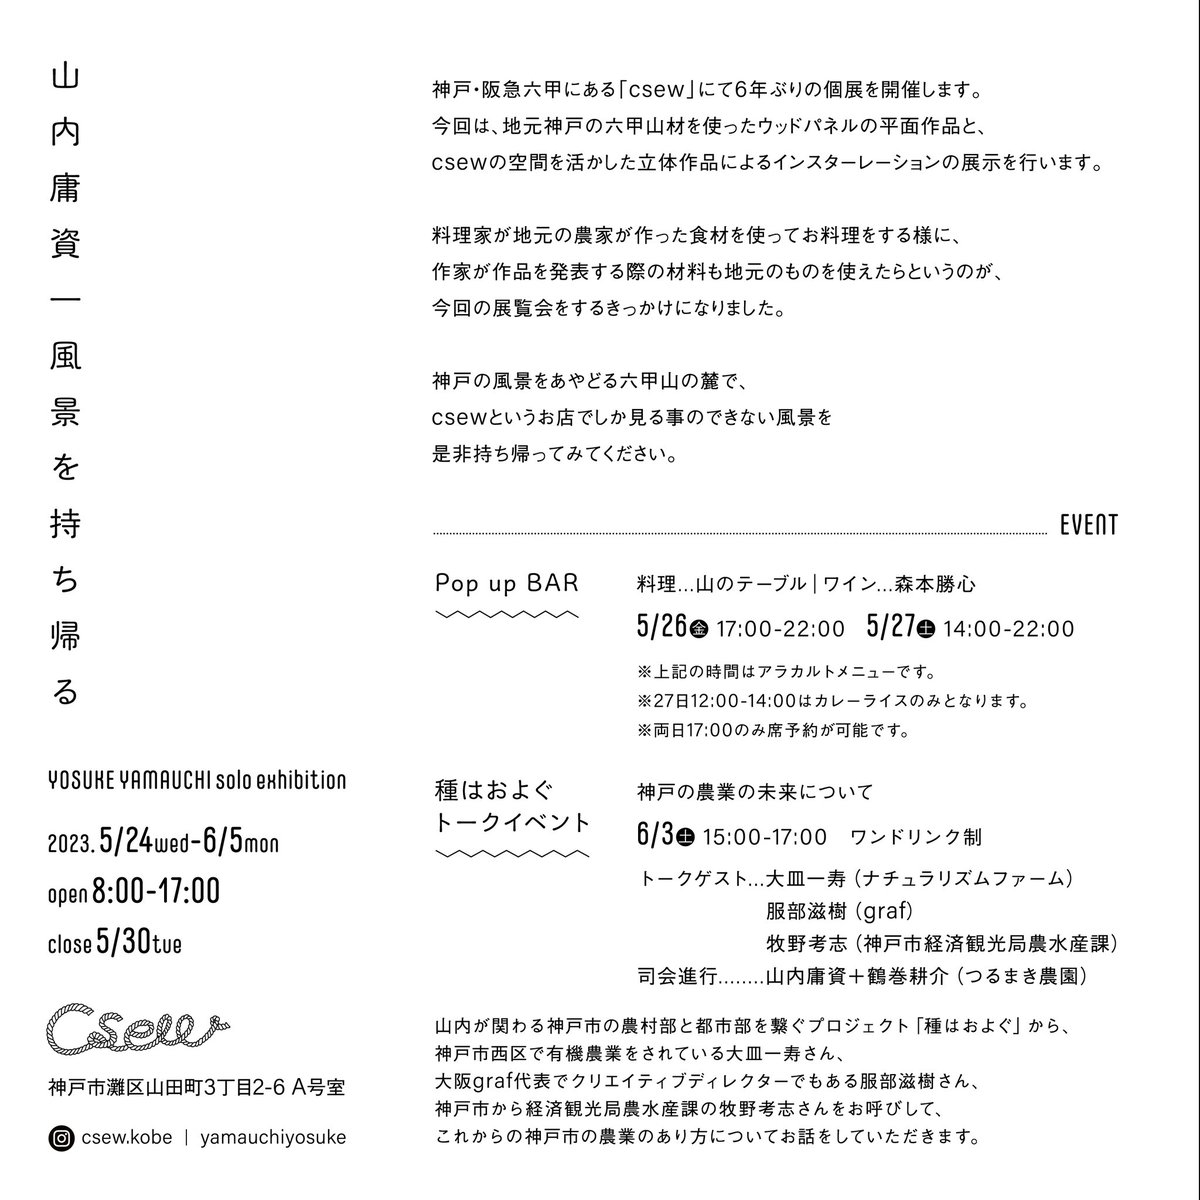 神戸・阪急六甲にある「csew」にて6年ぶりの個展を開催します。  山内庸資「風景を持ち帰る」  5.24(水)～6.5(月) 営業時間 : 8時-17時 定休日 : 5.30(火)  今回、地元神戸の六甲山材を使ったウッドパネルの平面作品と、csewの空間を活かした立体作品によるインスターレーションの展示を行います。